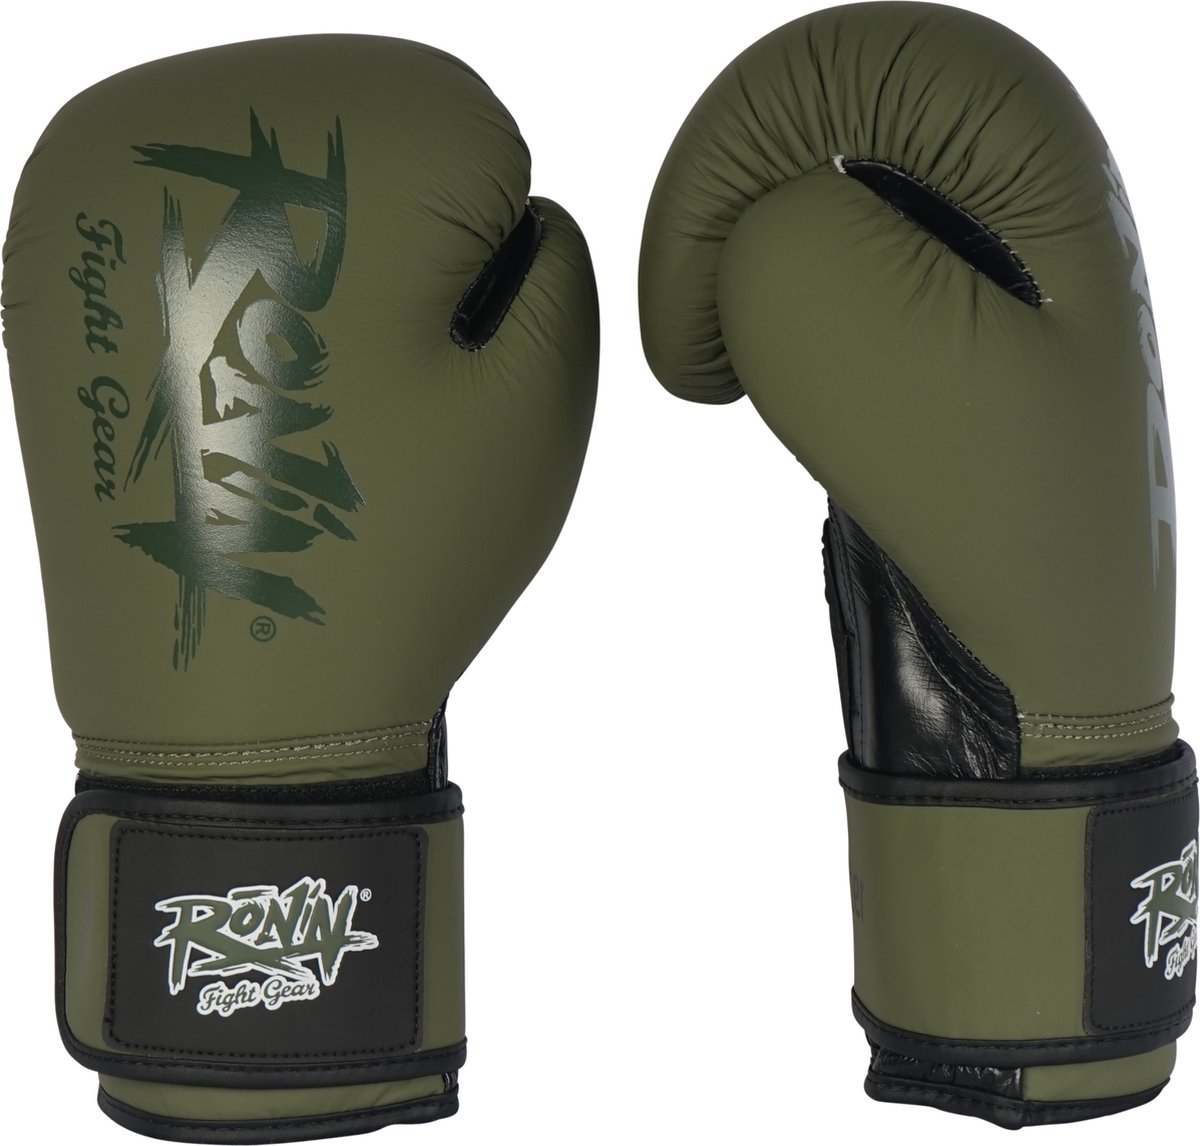 Ronin Fighter Bokshandschoen groen/zwart 10oz